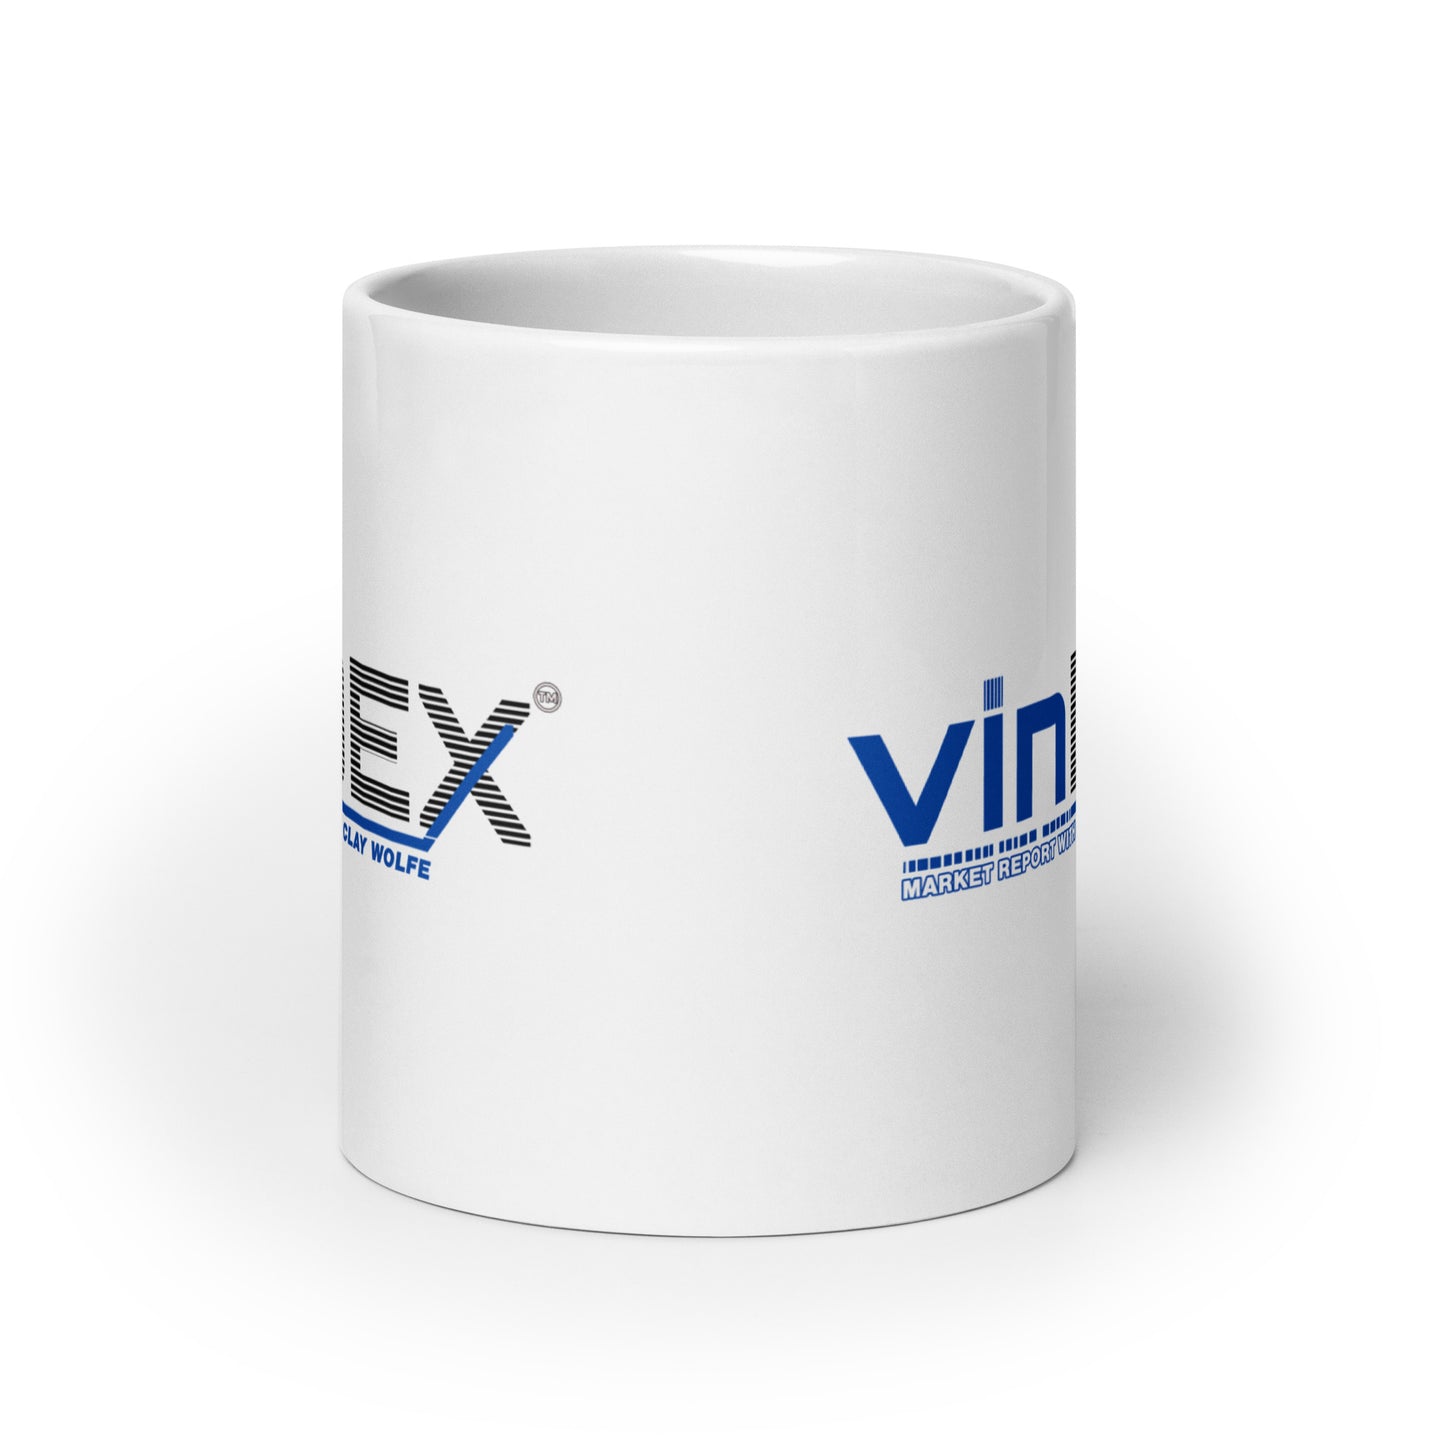 VinDex White glossy mug